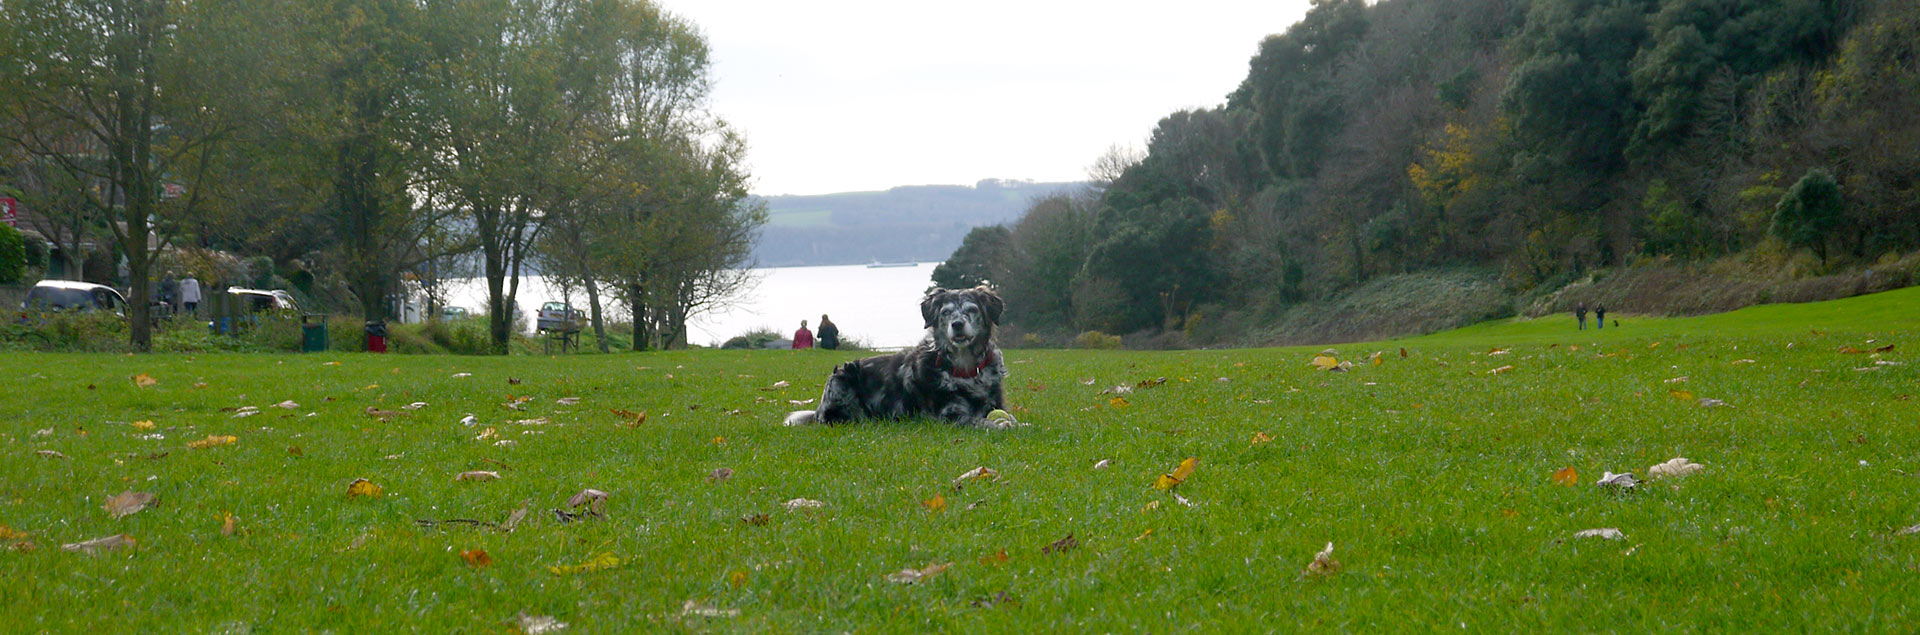 Little Theatre circular dog walk in Devon